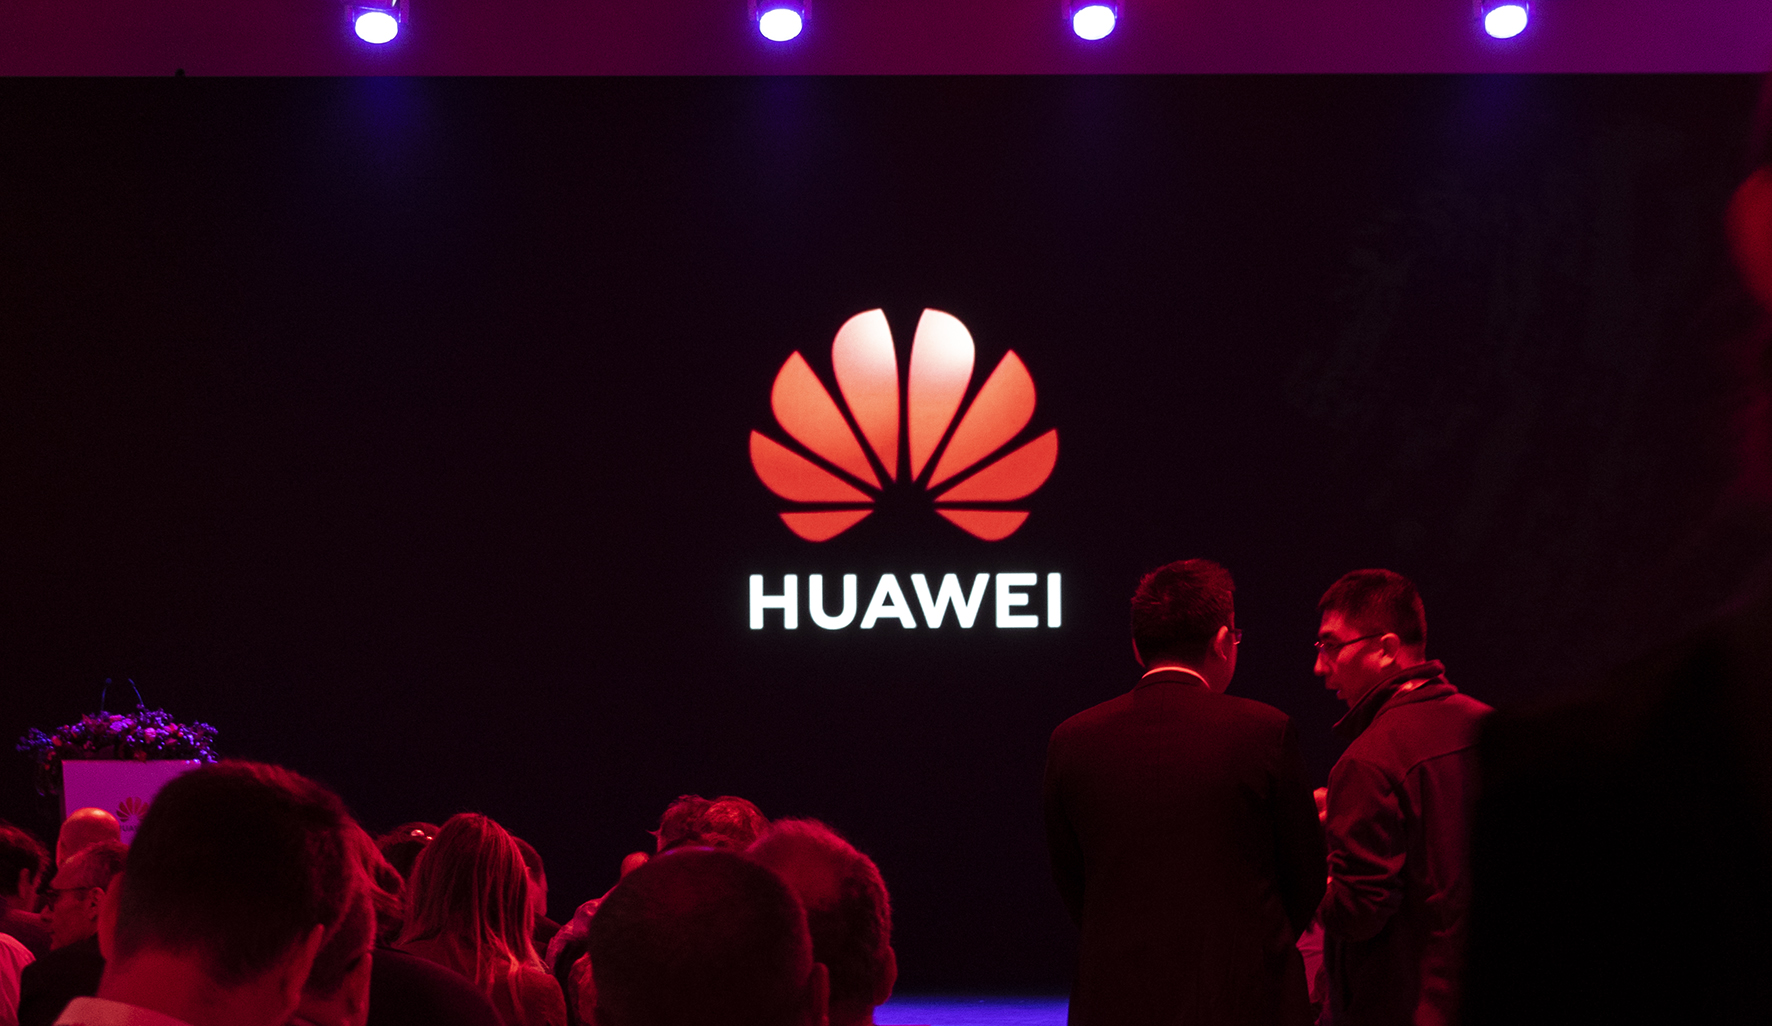 A Huawei túl nagyra nőtt Európában ahhoz, hogy egykönnyen meg lehessen szabadulni tőle